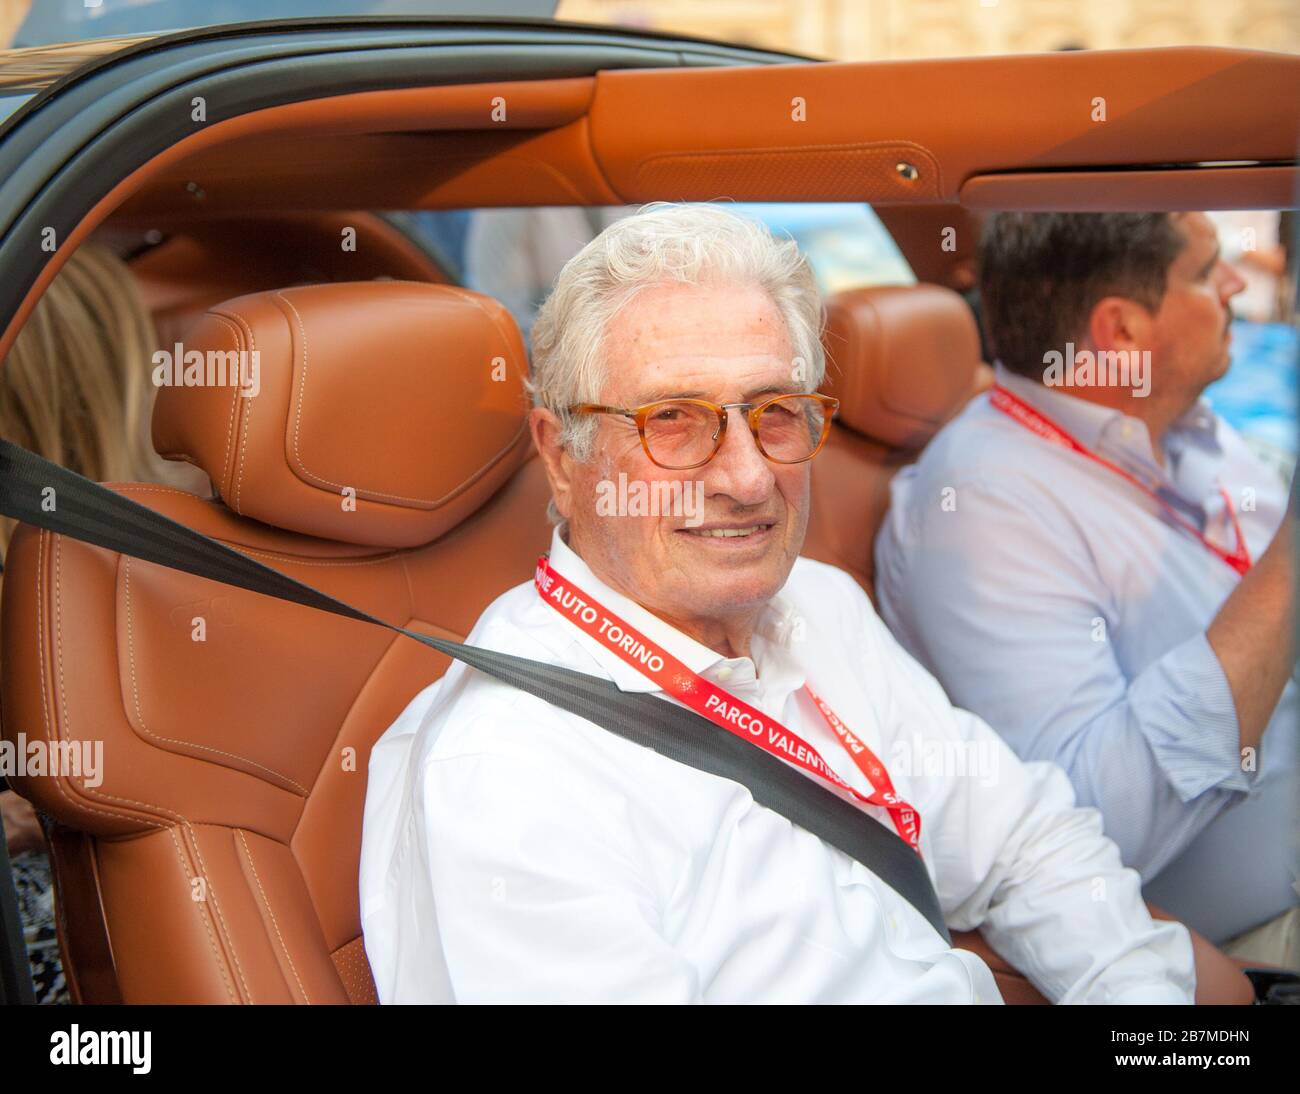 turin, Italien, 19. juni 2019, Giorgetto Giugiaro fotografierte auf einem seiner prächtigen Autos auf dem Turiner Autosalon Stockfoto